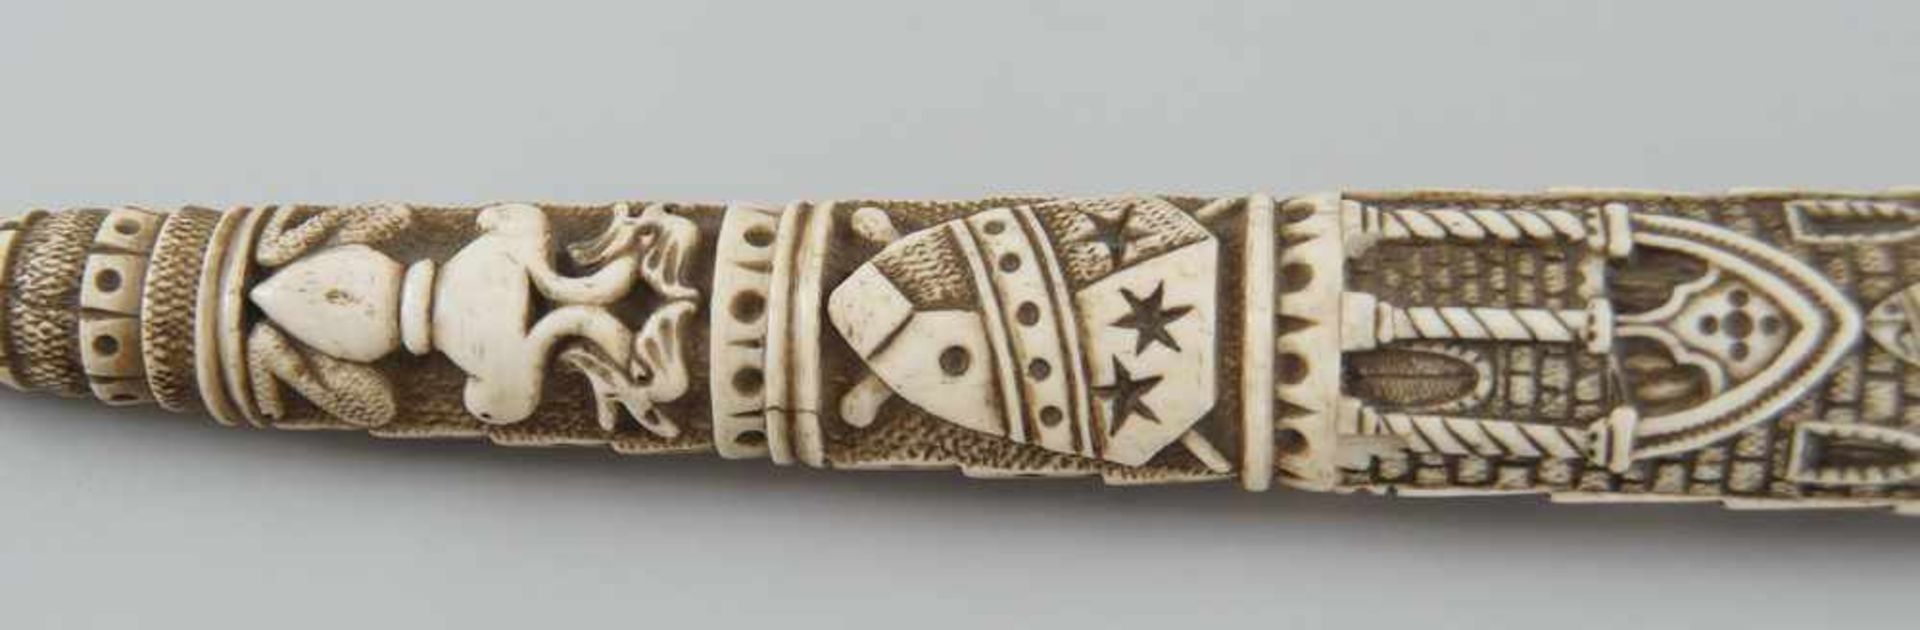 Schwert mit fein geschnitzter Scheide und Griff aus Elfenbein, Klinge aus Eisen, 19. JH, - Bild 11 aus 11